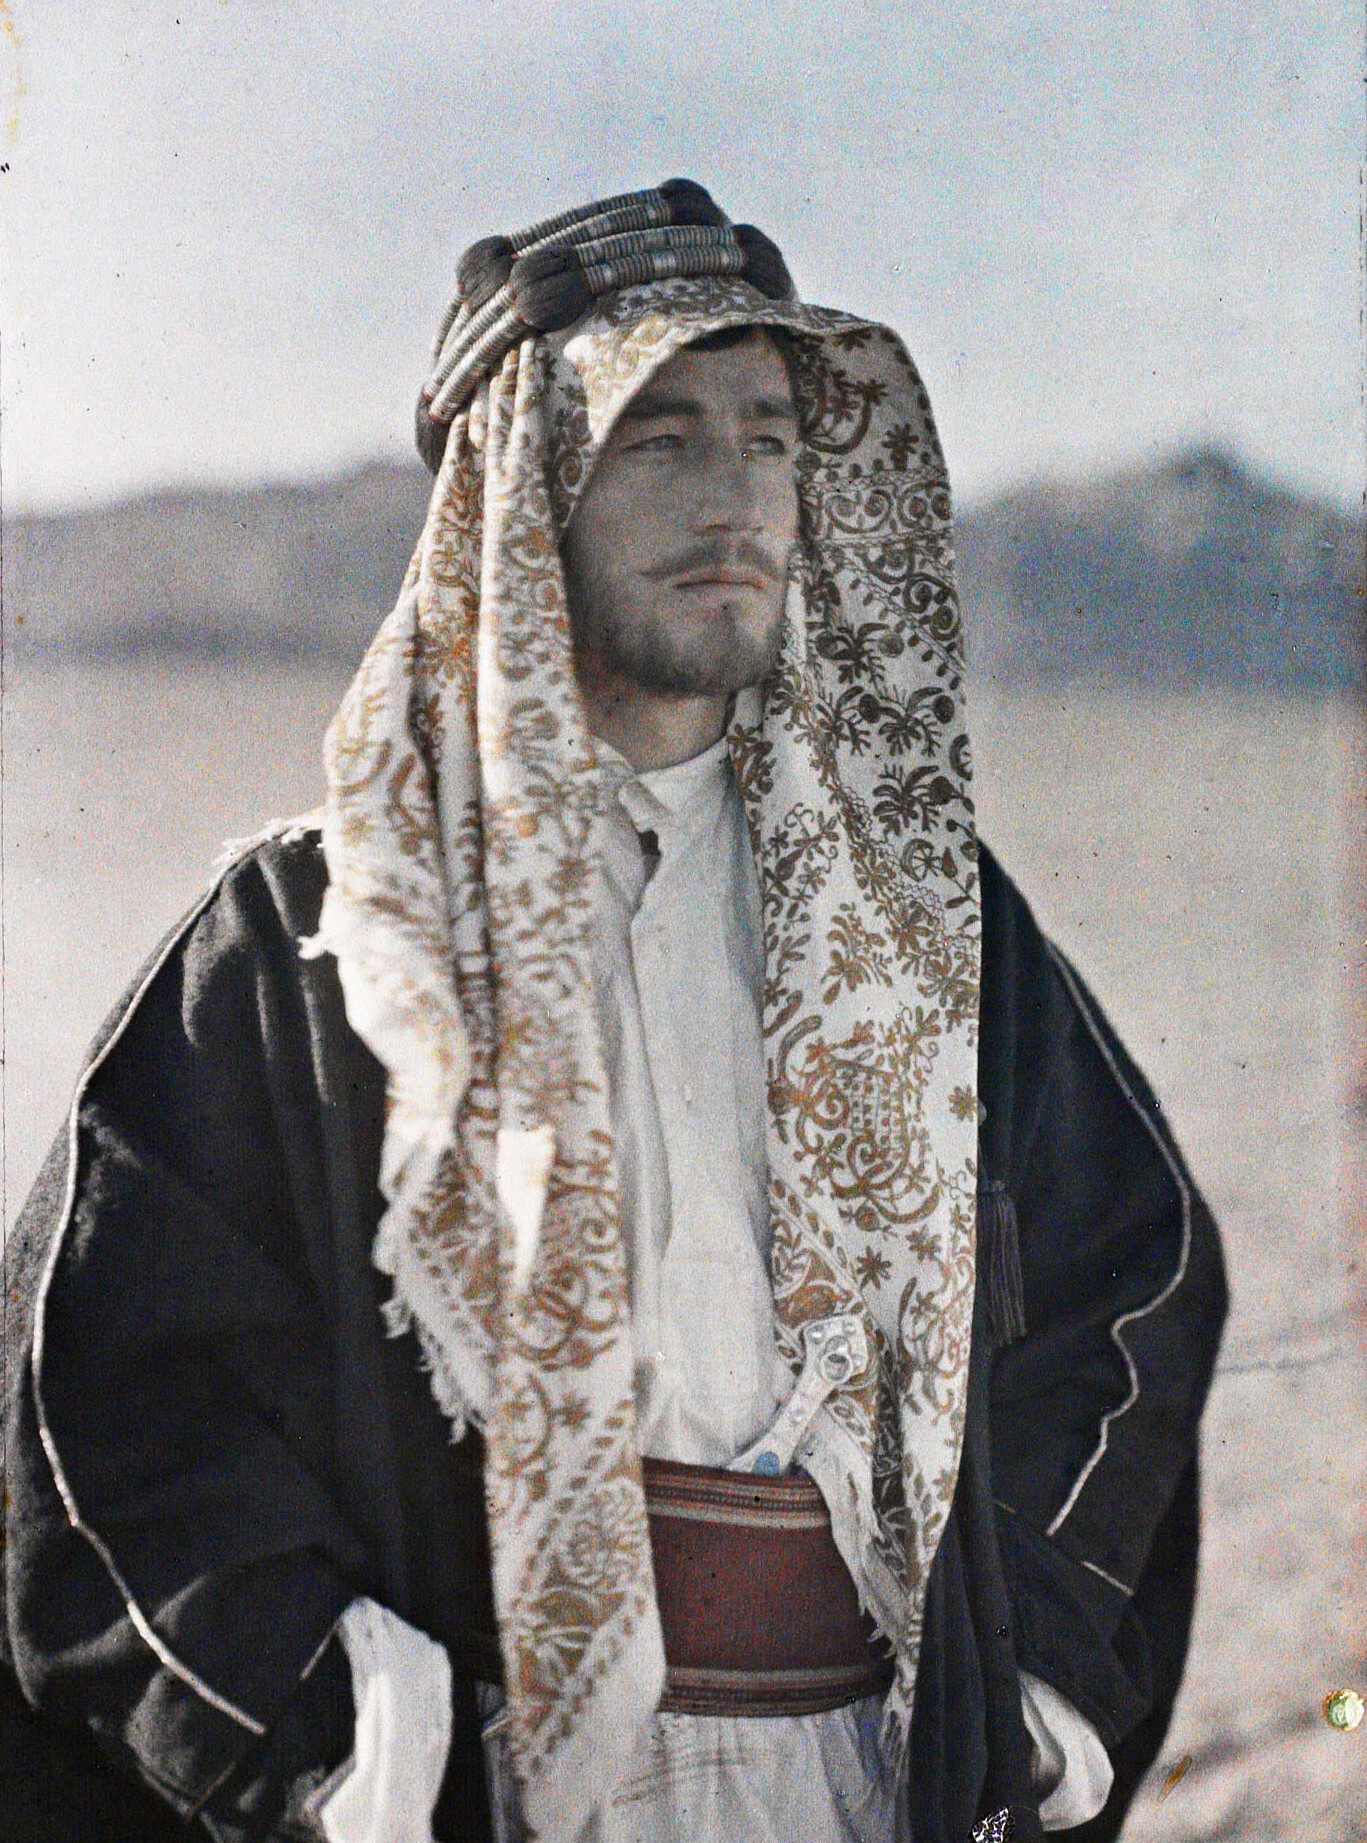 Кувейра, Аравия (Иордания). Файз Бей эль-Азм, сподвижник эмира Фейсала, 1918 год, автор Пол Кастельно (автохром)